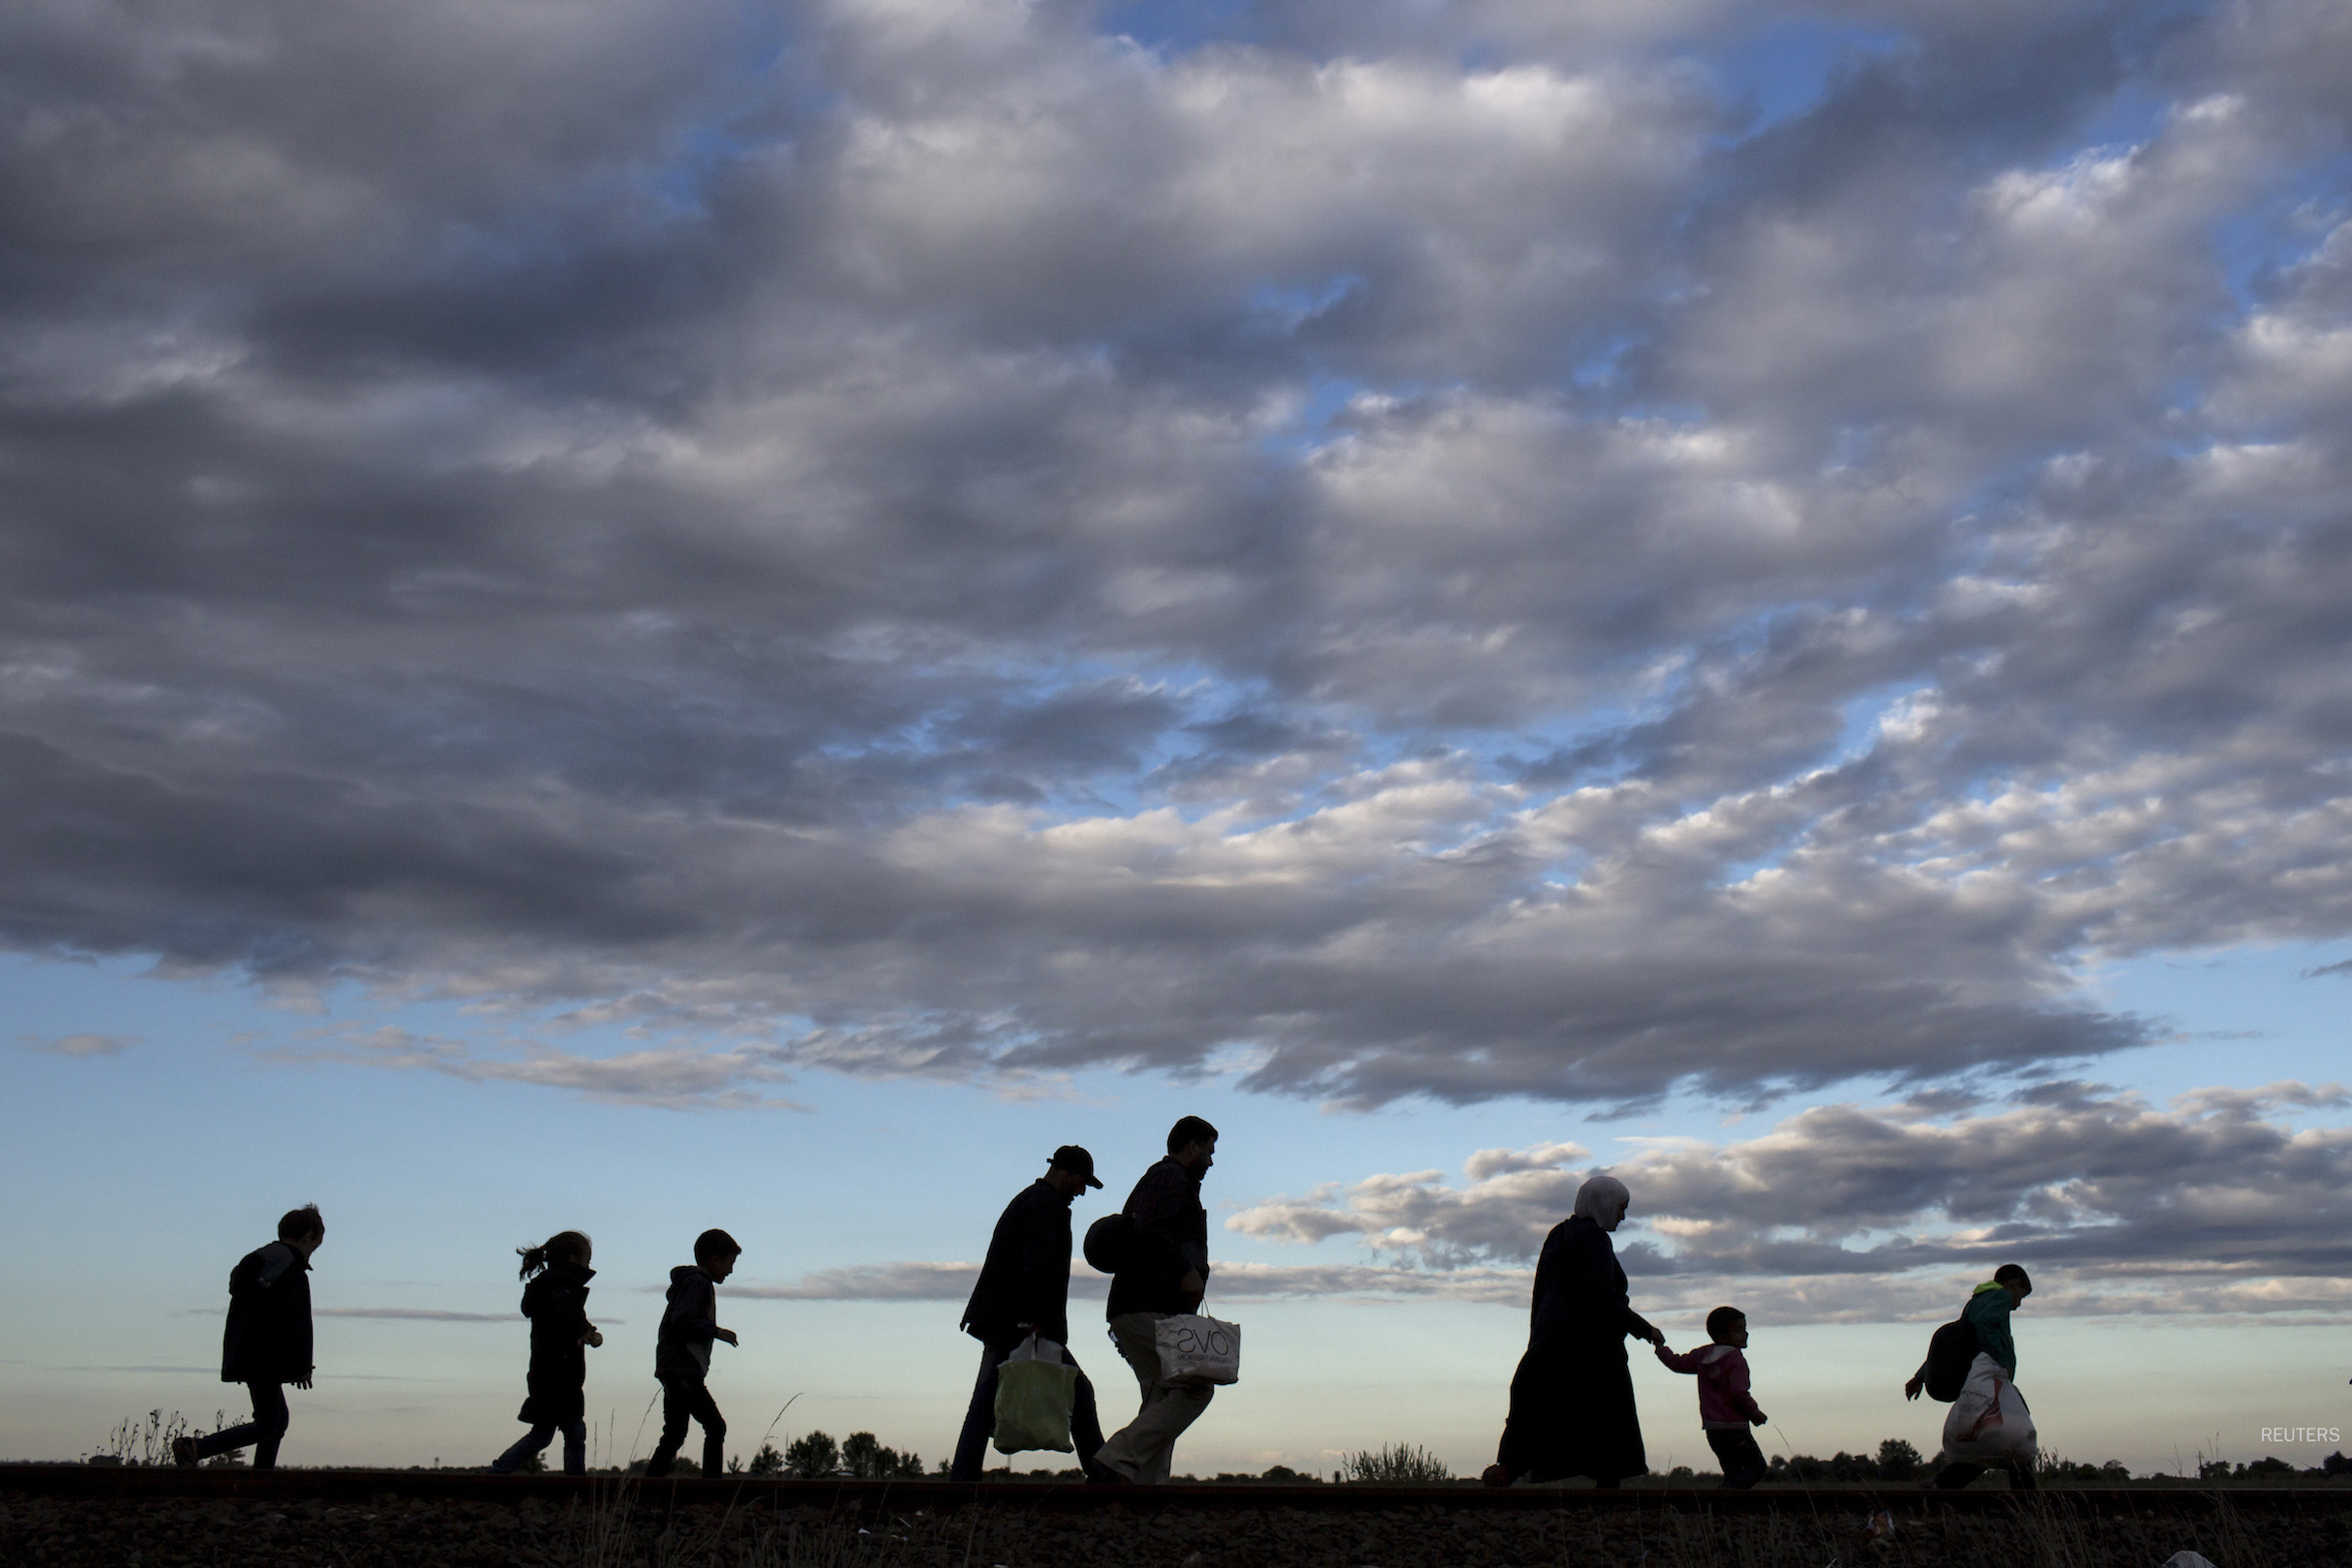 refugees walking